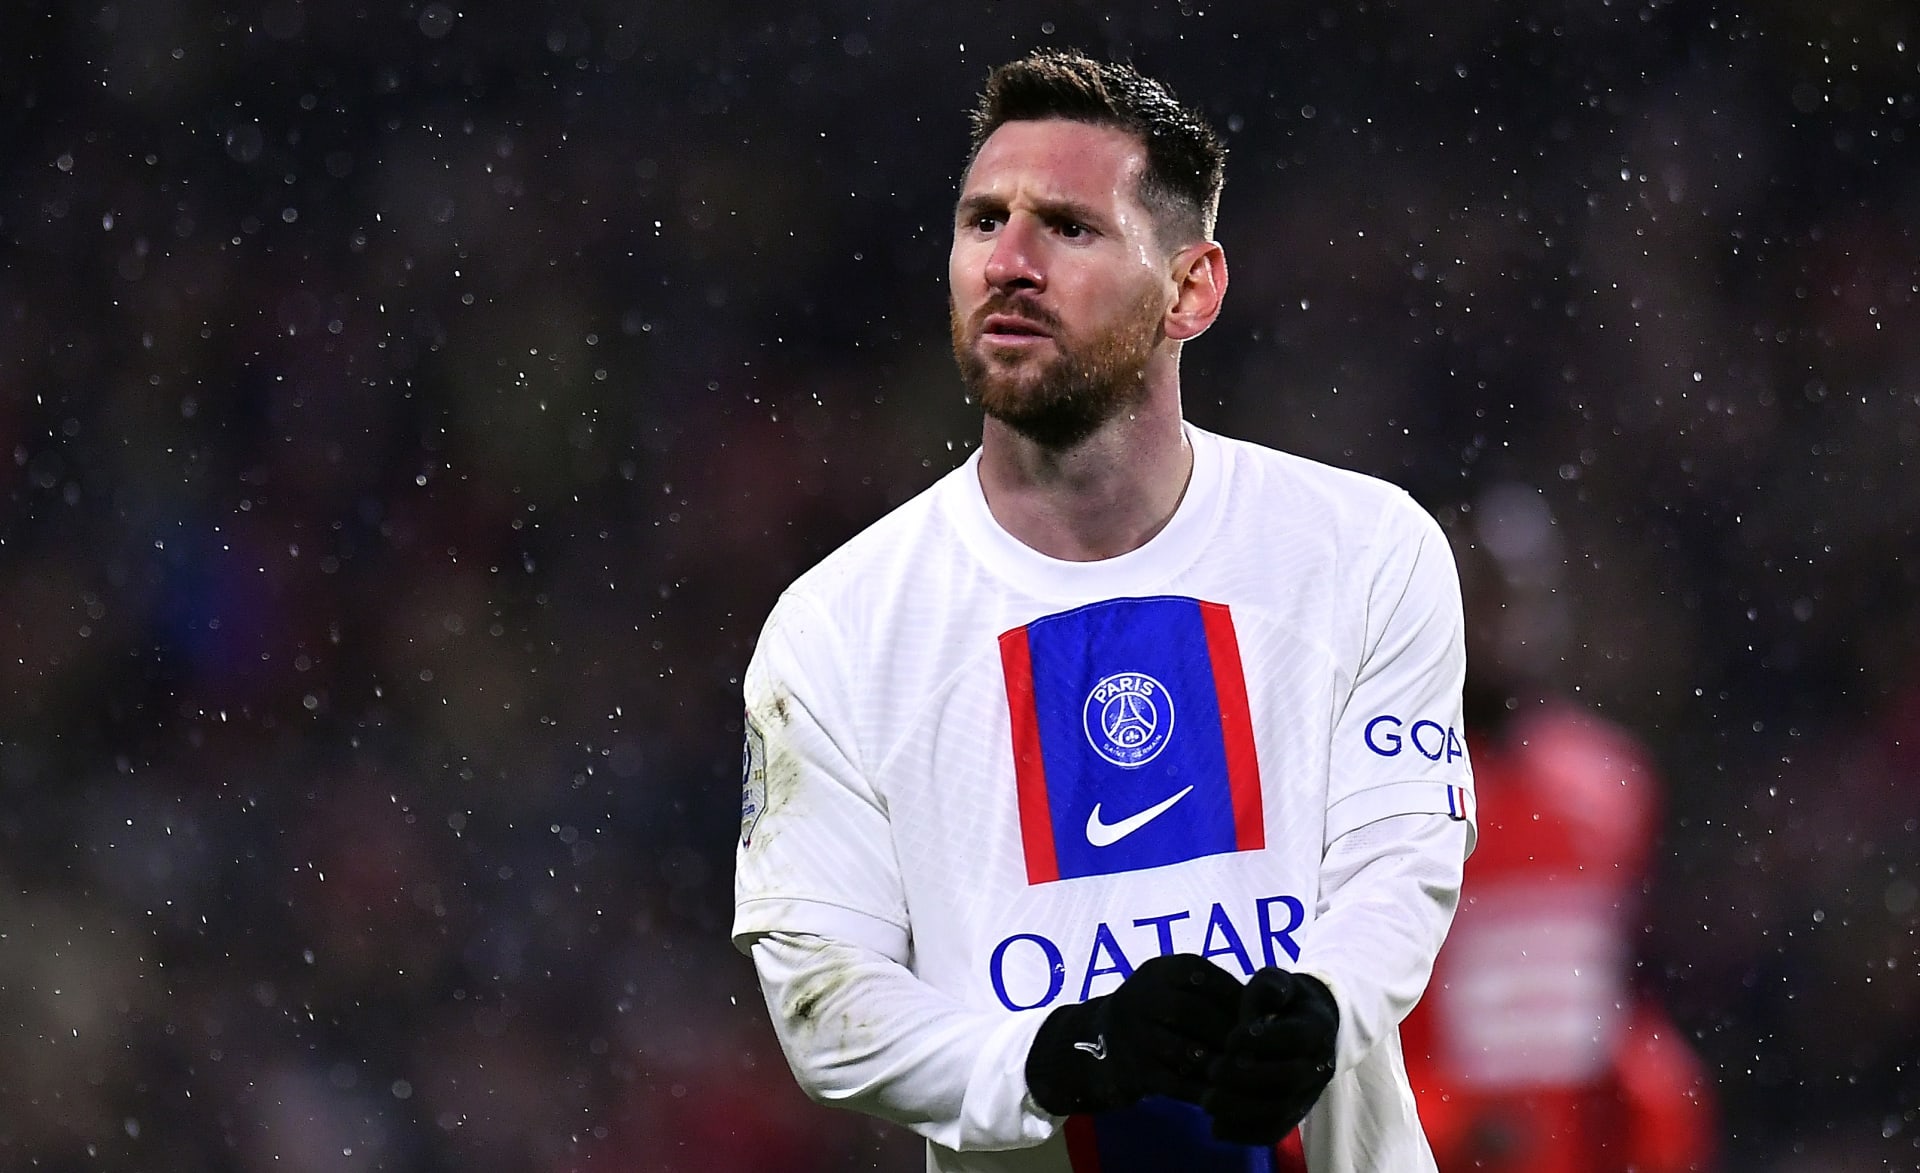 Lionel Messi je fenomén. A tak vznikají jeho portréty i v poli.